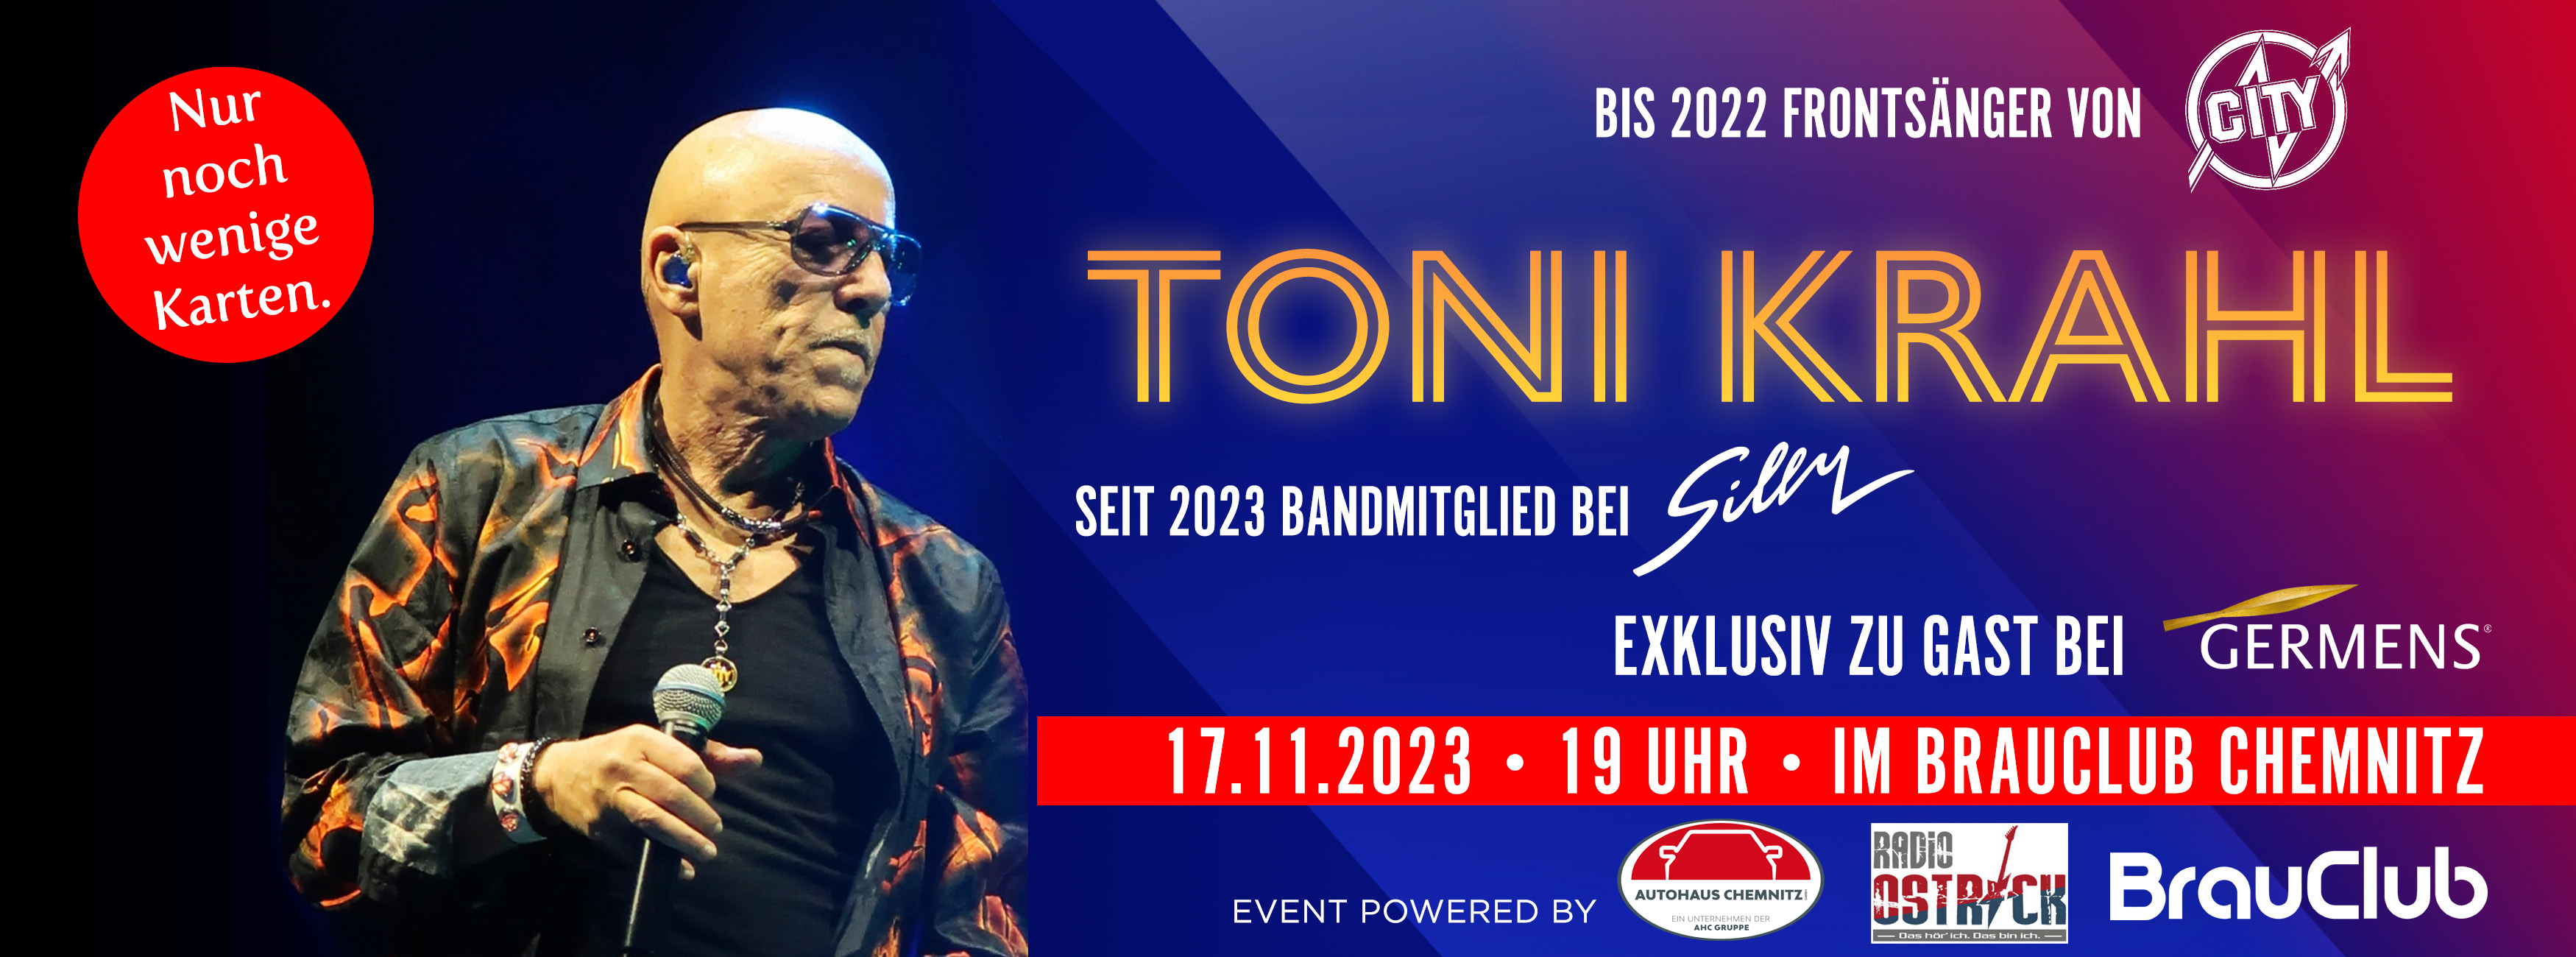 Toni Krahl exklusiv zu Gast bei GERMENS am 17. November 2023 in Chemnitz